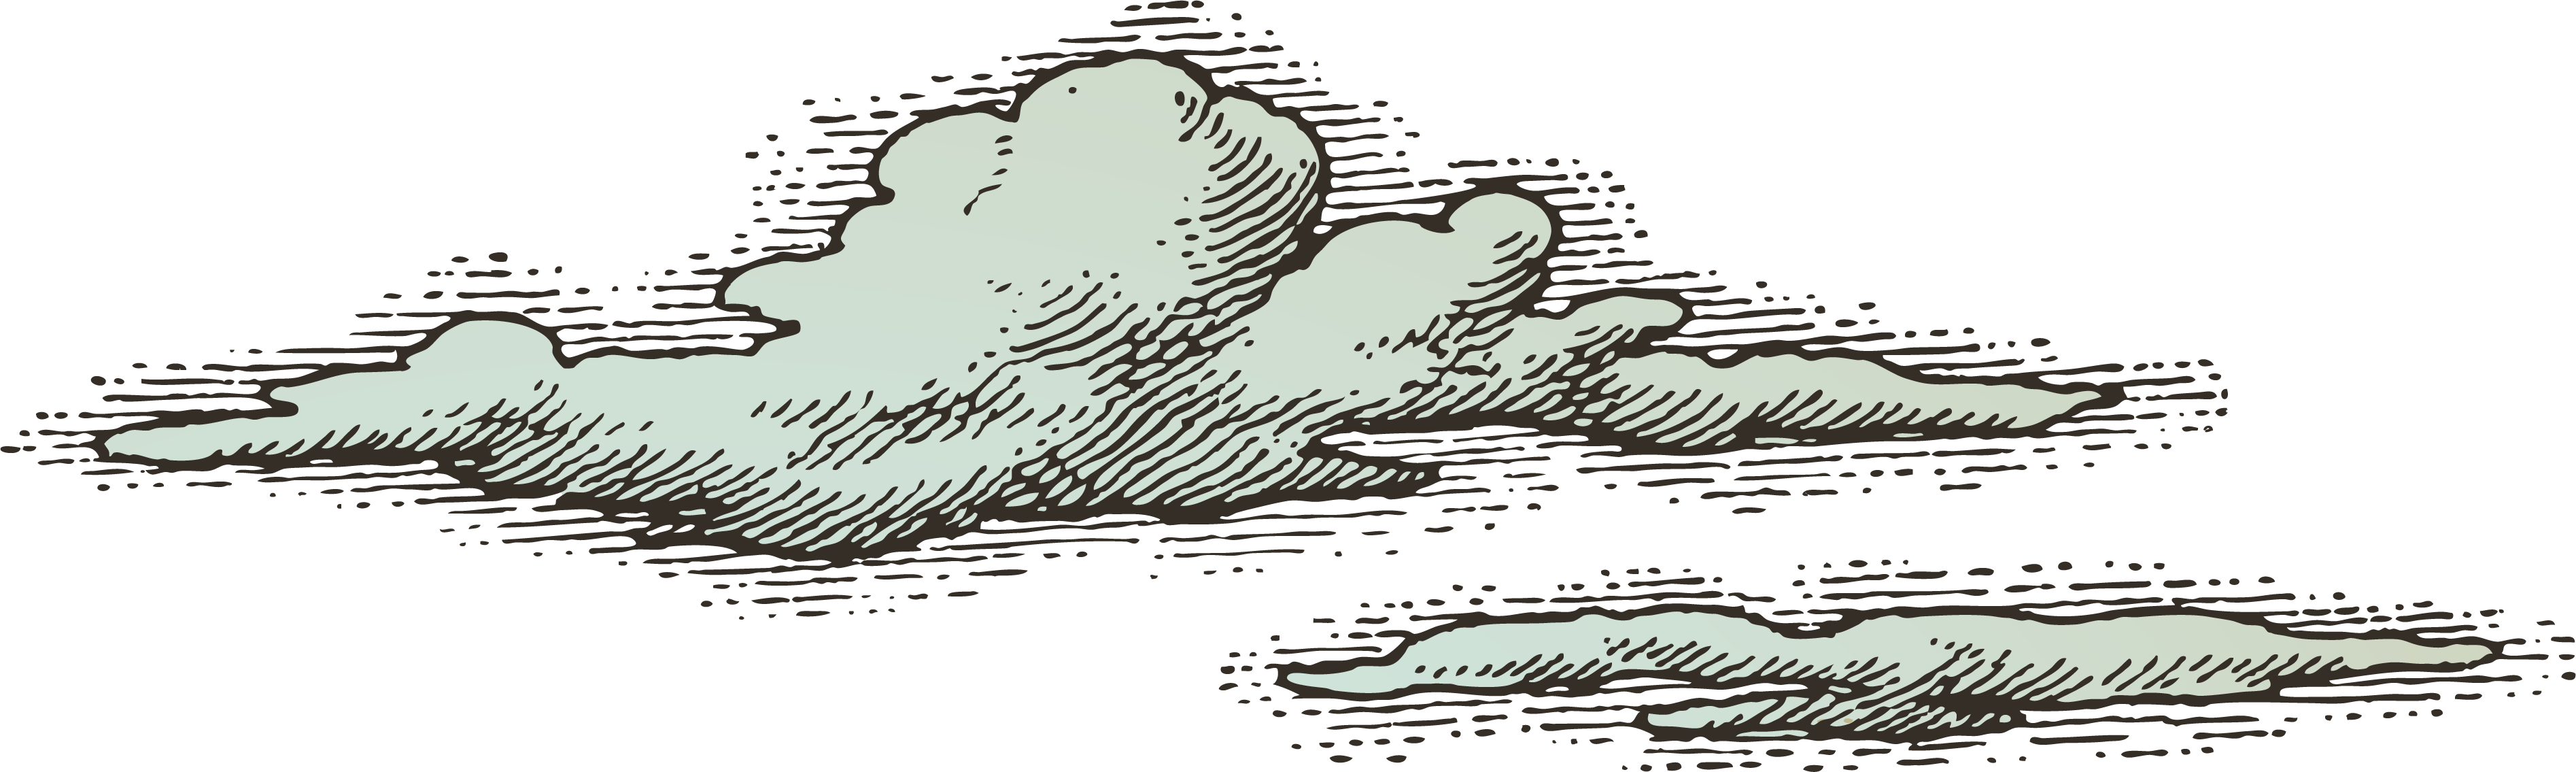 Drawn Smoking Shading Cloud Vector